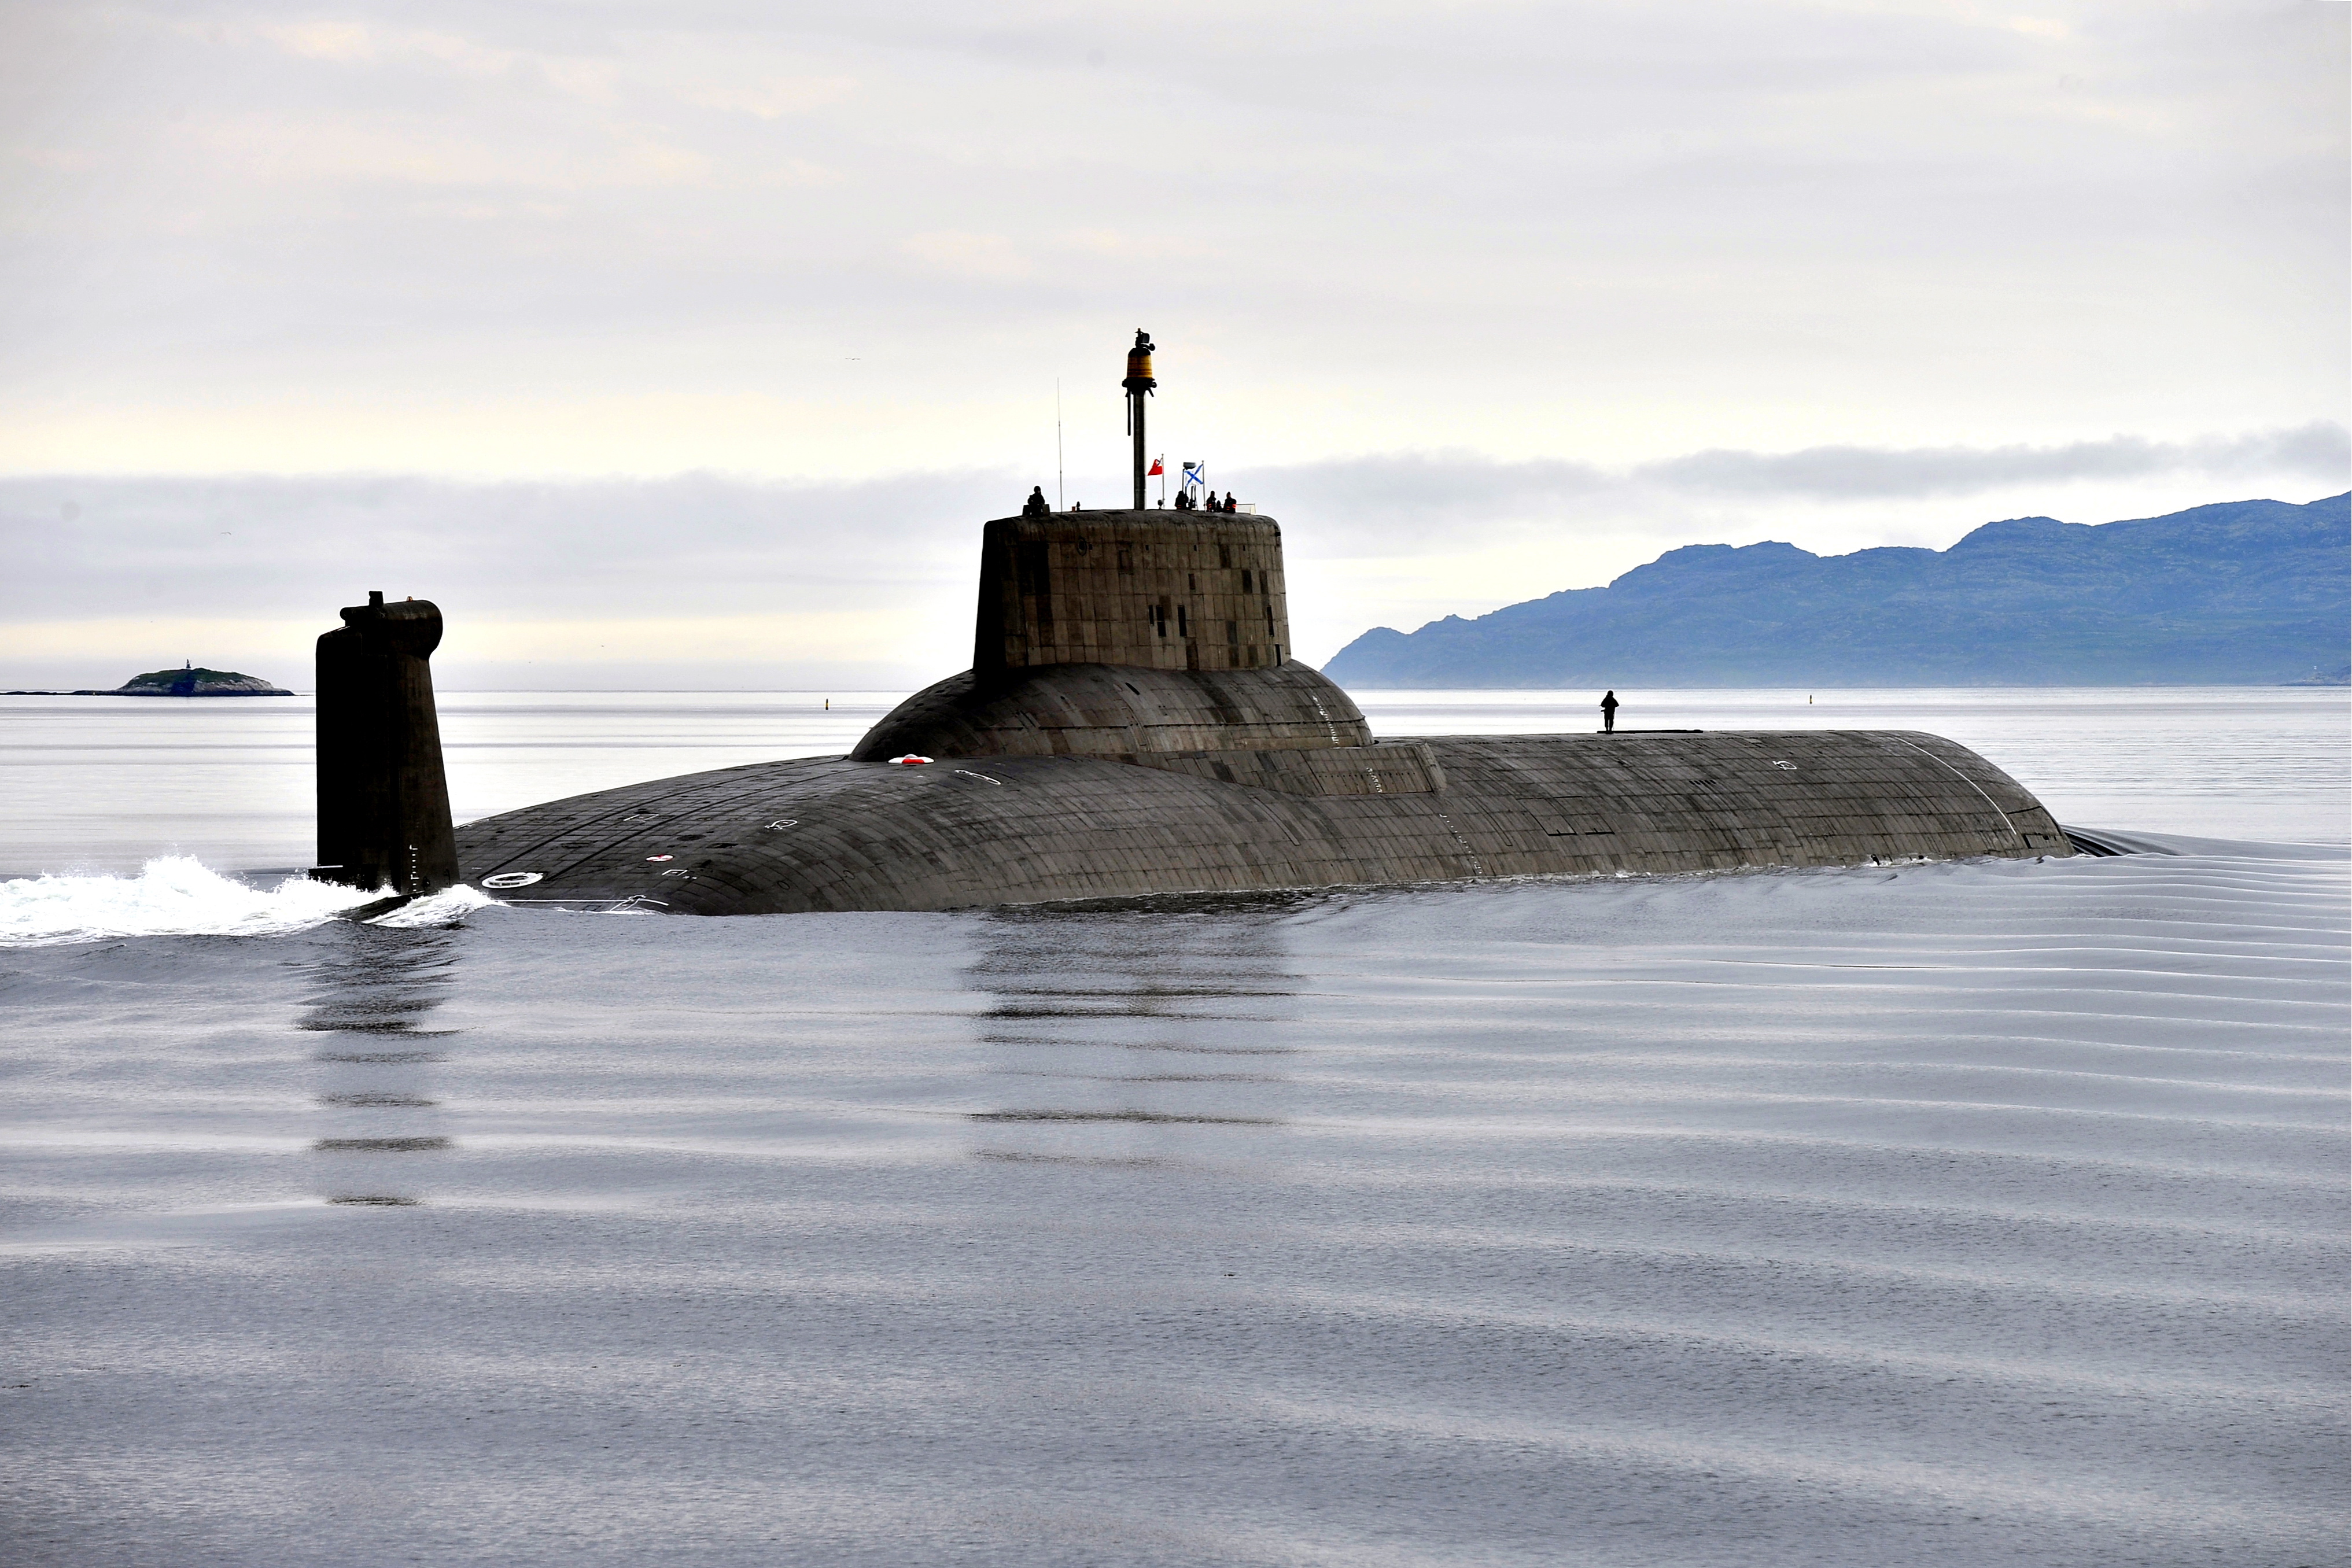 Атомная подводная лодка Дмитрий Донской